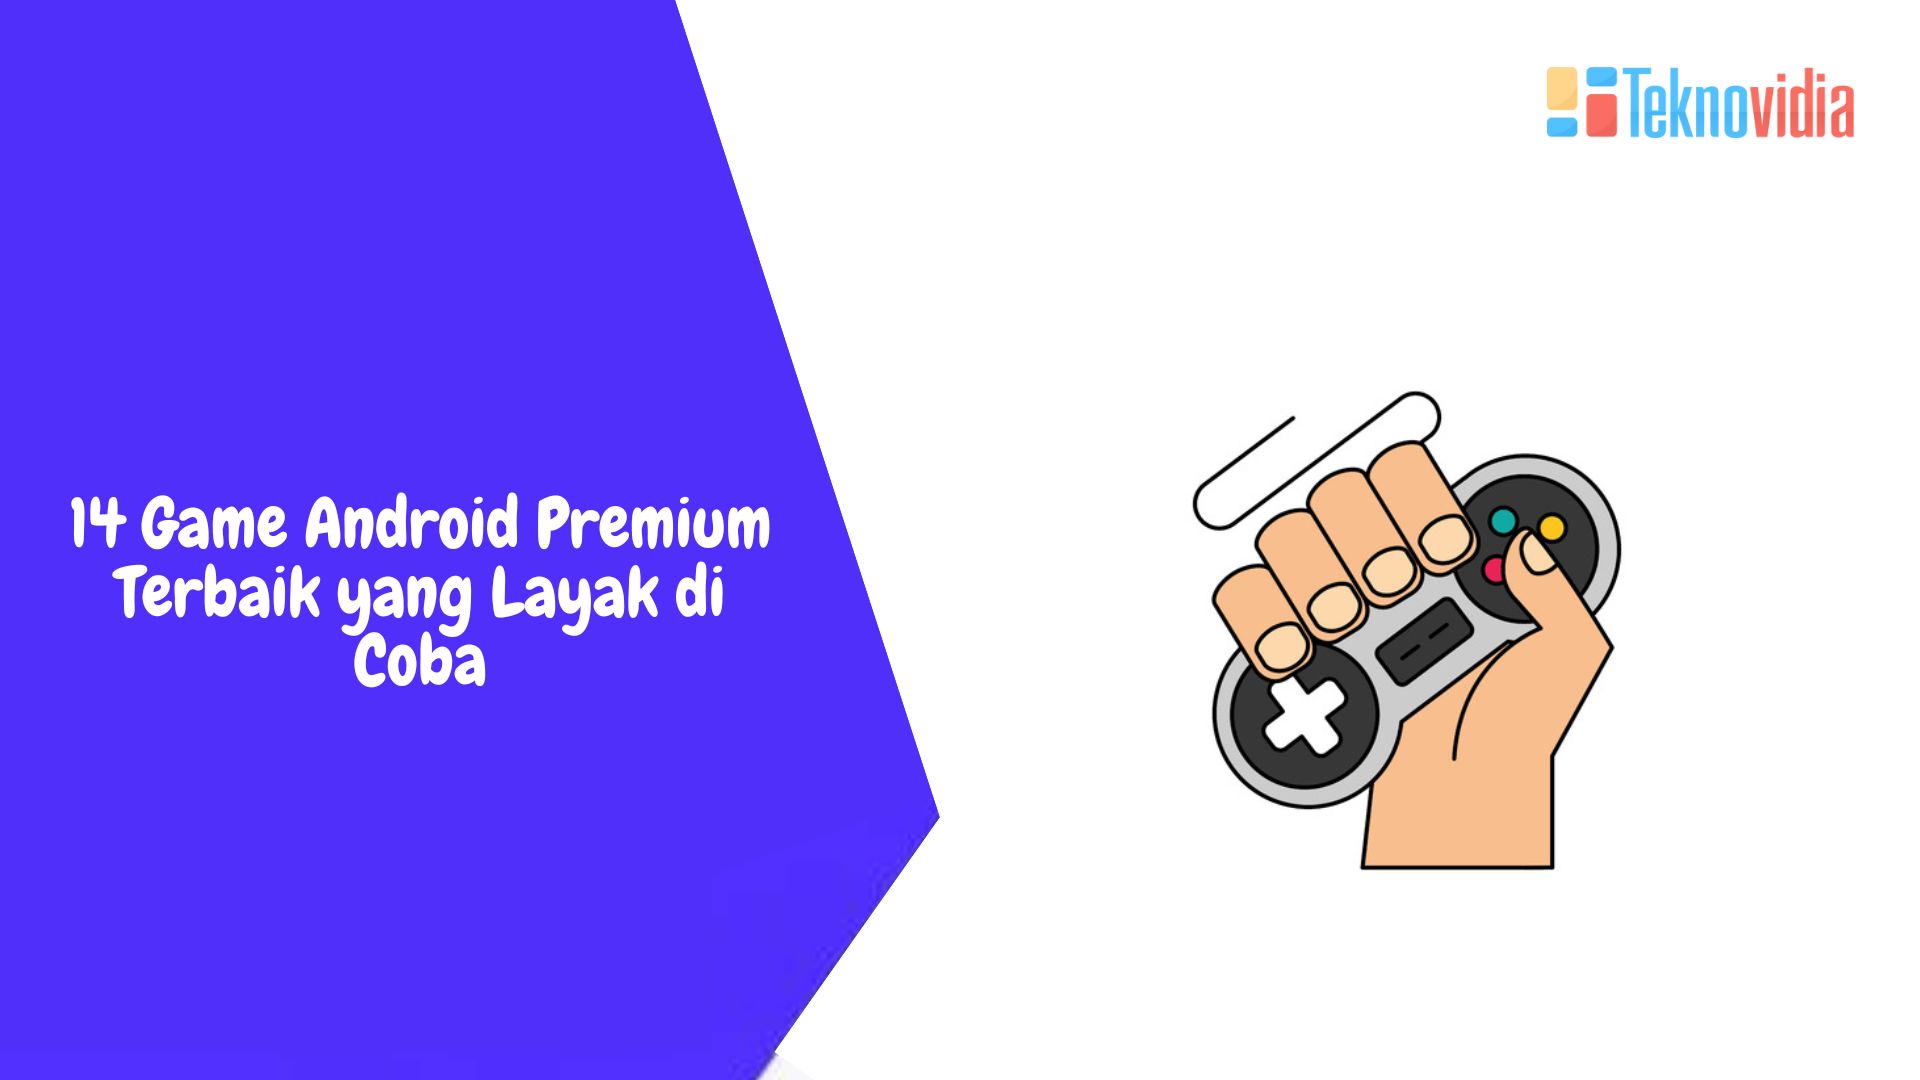 14 Game Android Premium Terbaik yang Layak di Coba